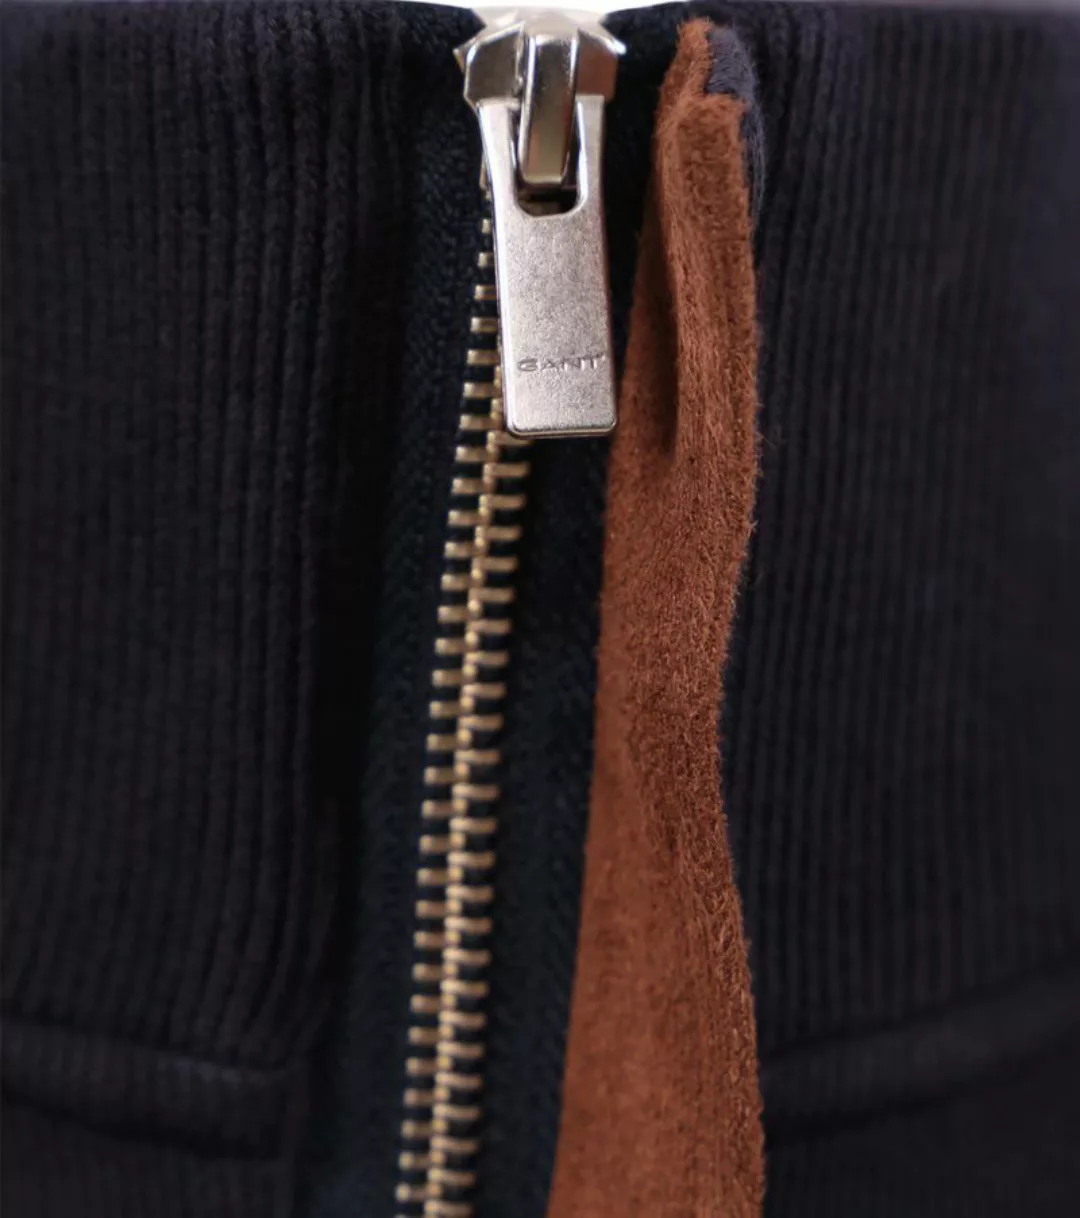 Gant Halfzip Sacker Pullover Navyblau - Größe XXL günstig online kaufen